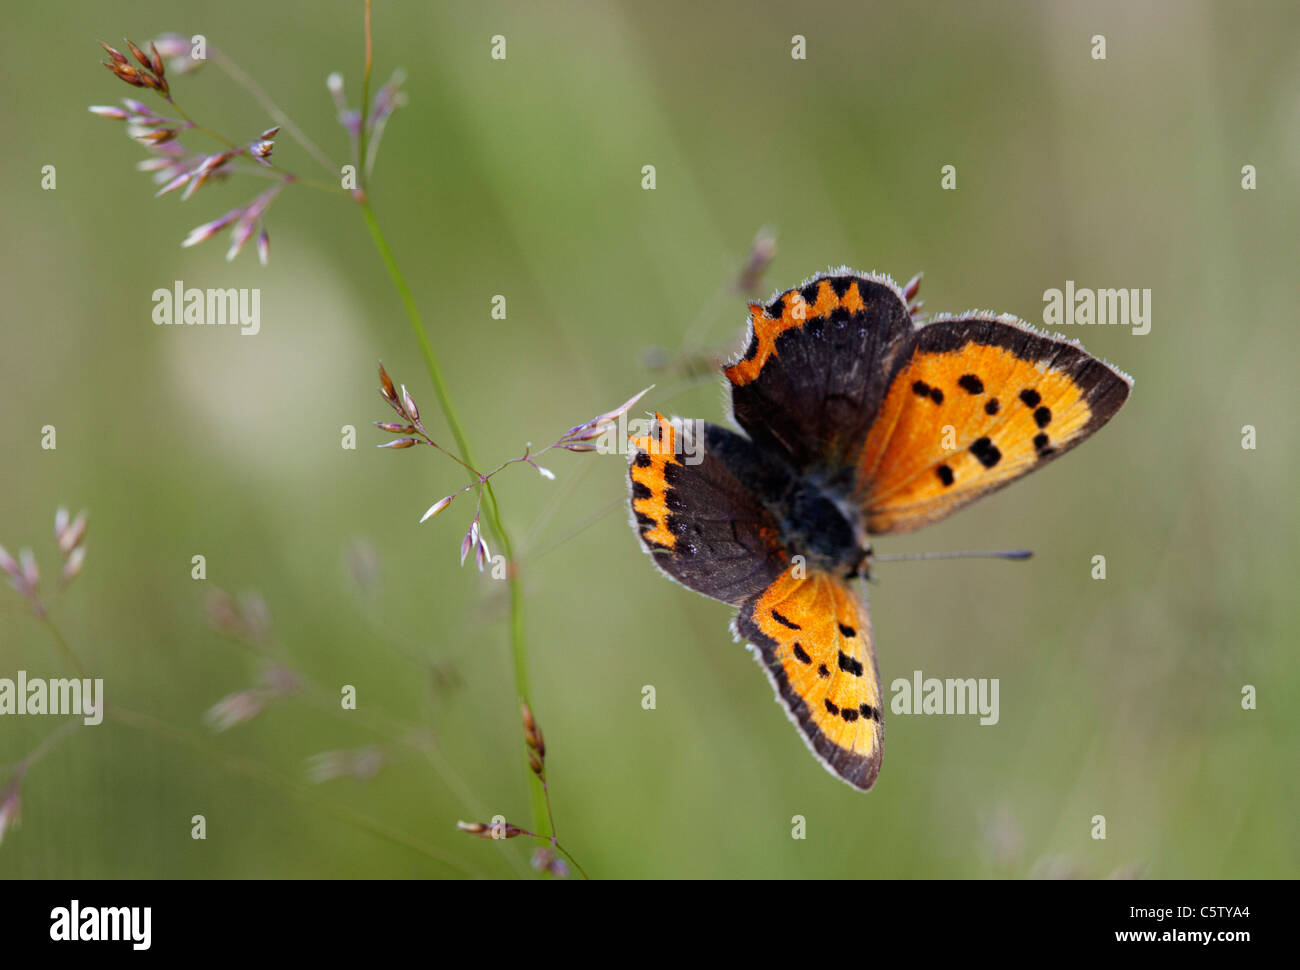 Petit papillon de cuivre sur l'herbe. Hurst Meadows, West Molesey, Surrey, Angleterre. Banque D'Images